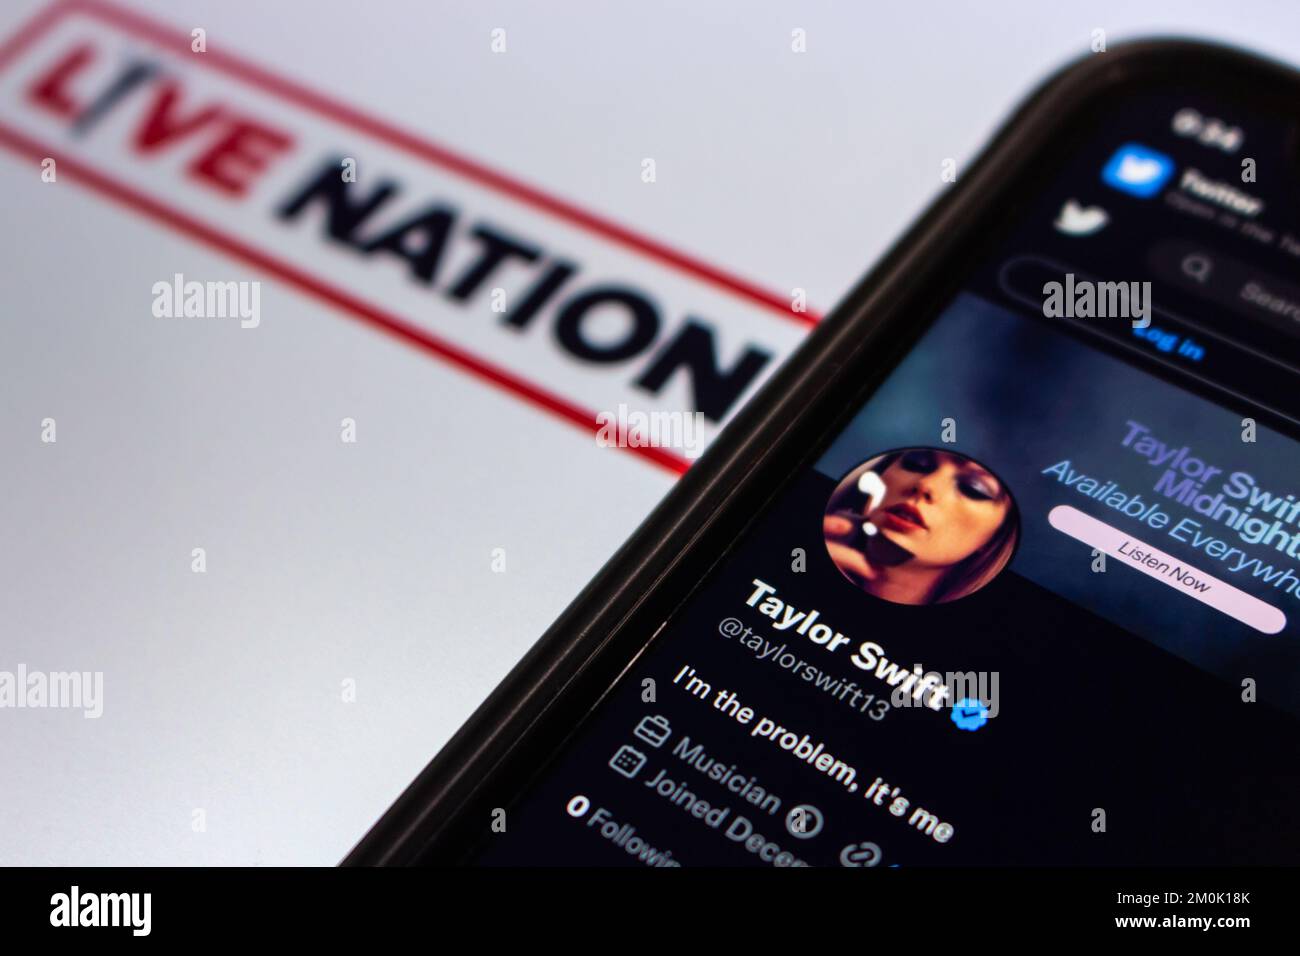 Twitter-Account des beliebten US-Sängers und Songwriters Taylor Swift auf Twitter-Website auf dem iPhone auf dem Hintergrund des Live Nation Logos. Selektiver Fokus Stockfoto